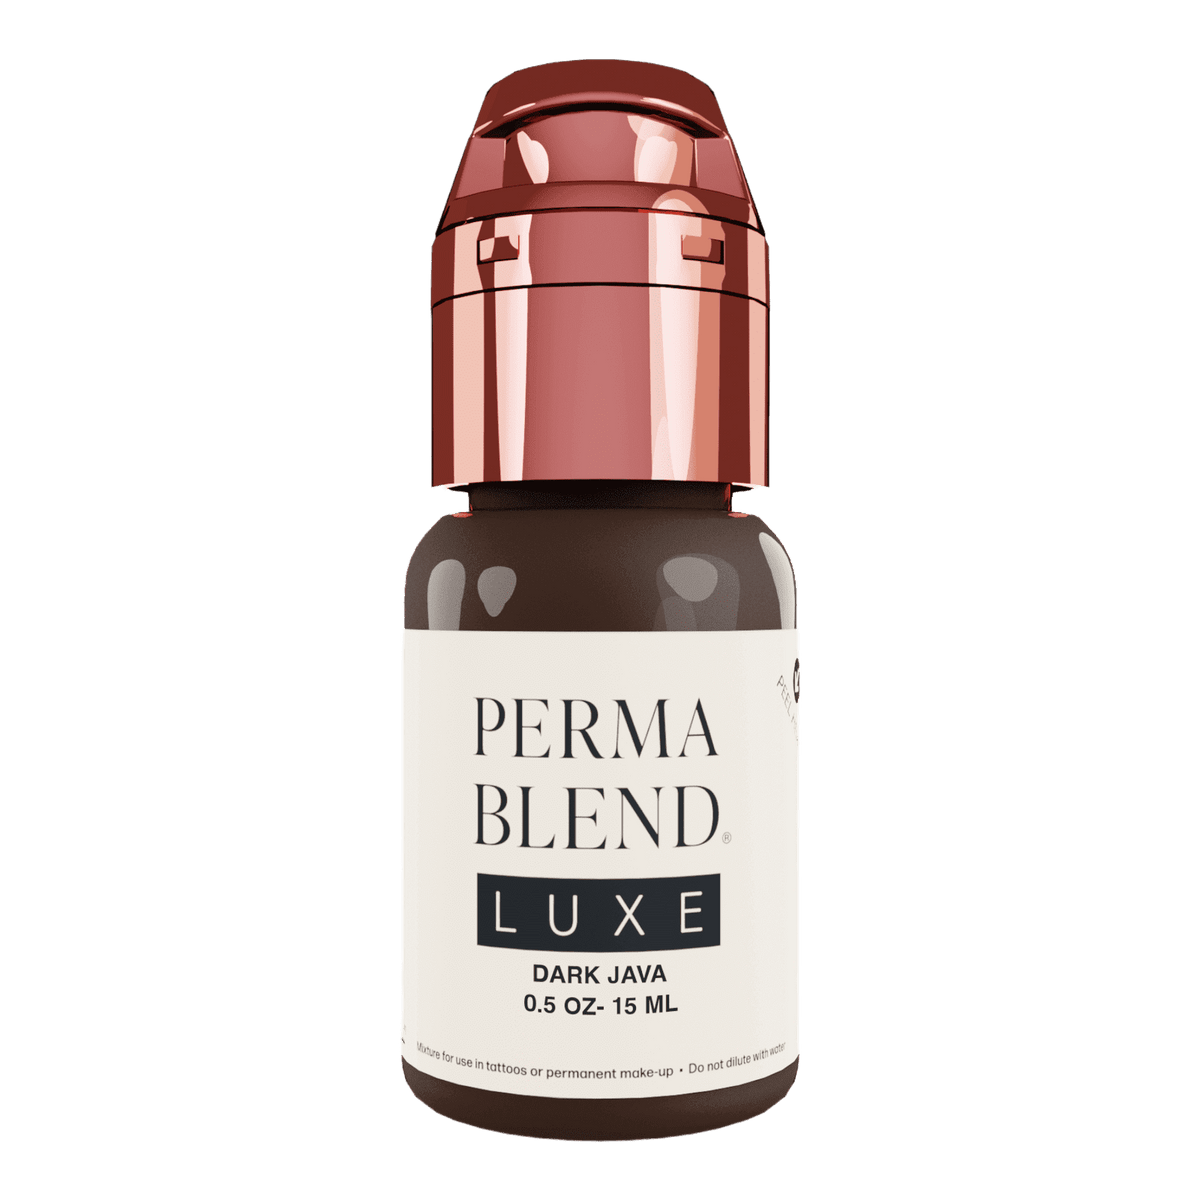 Perma Blend Luxe Dark Java